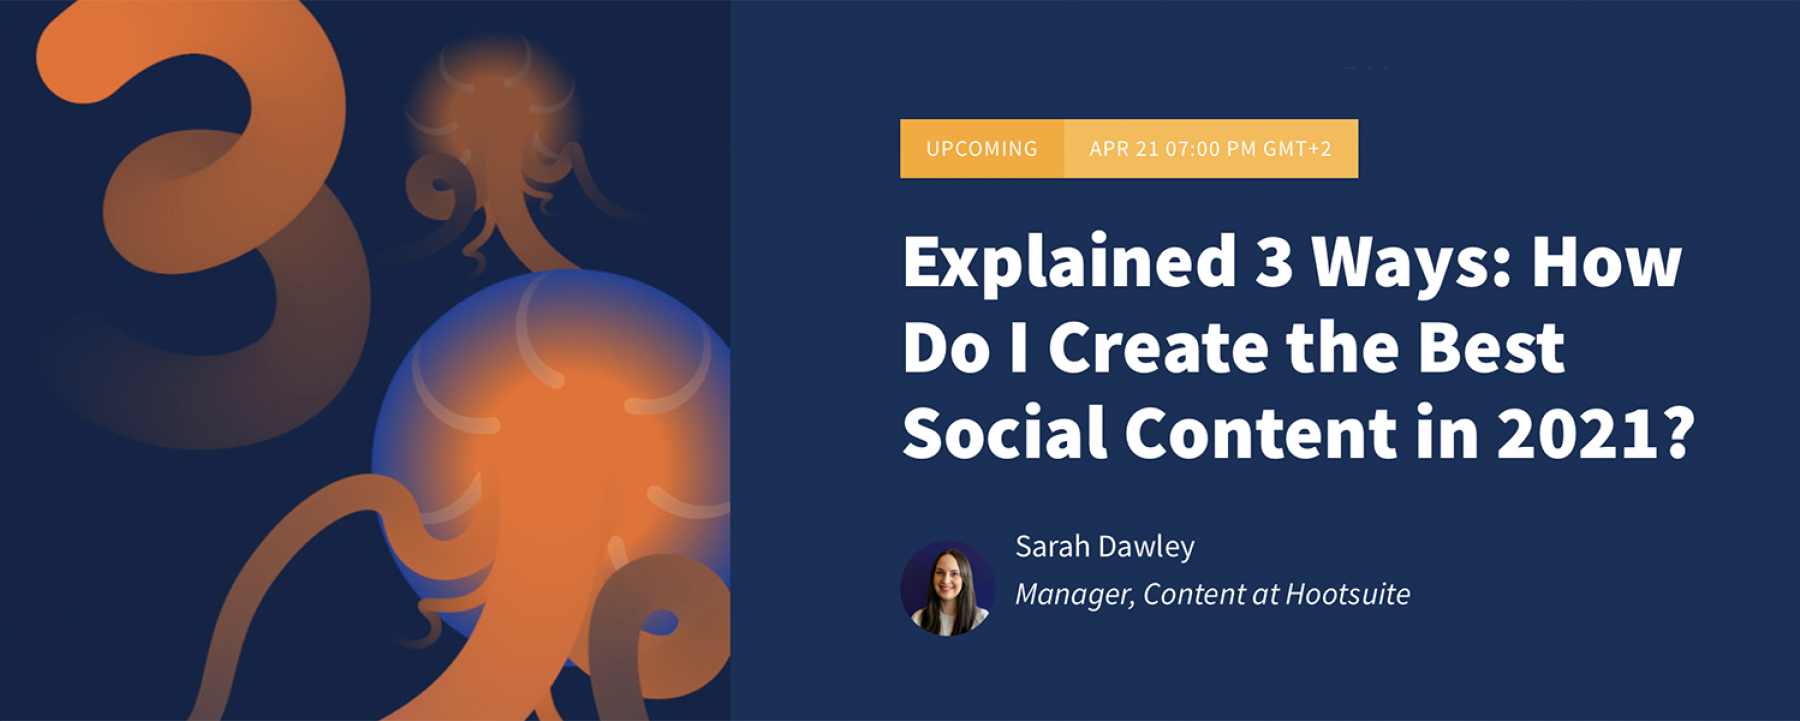 Explained 3 Ways: How Do I Create the Best Social Content in 2021? organisé par Hootsuite le 21 avril